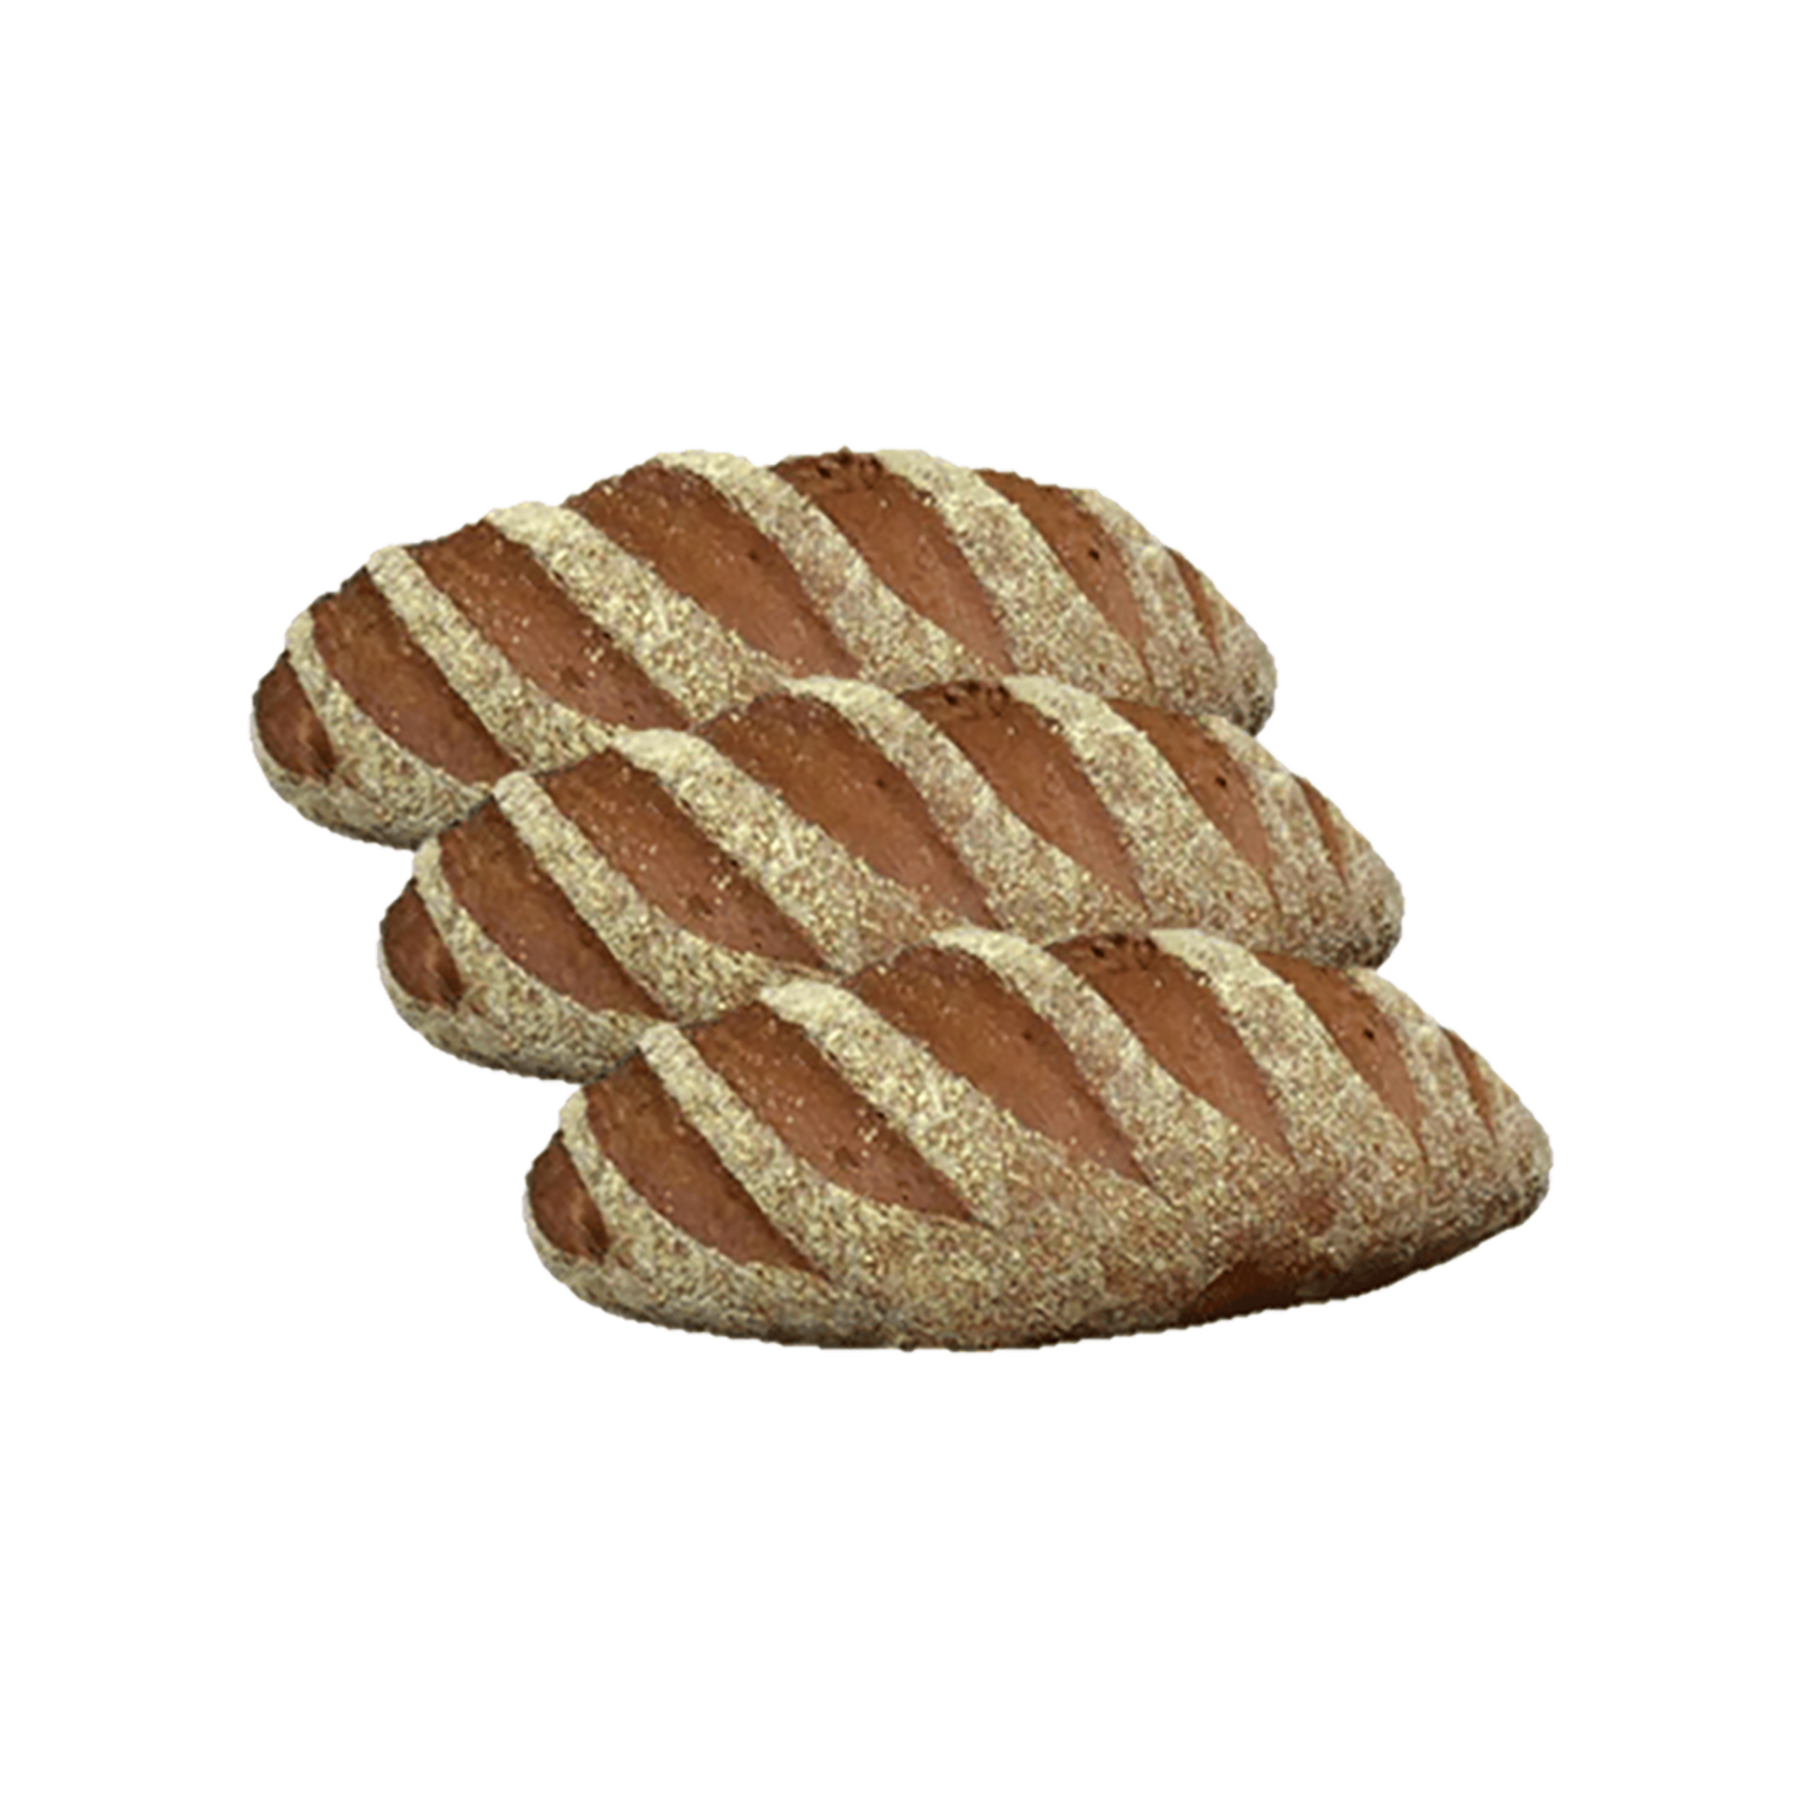 Pão Australiano Congelado / Pré-Assado aprox. 1.050g